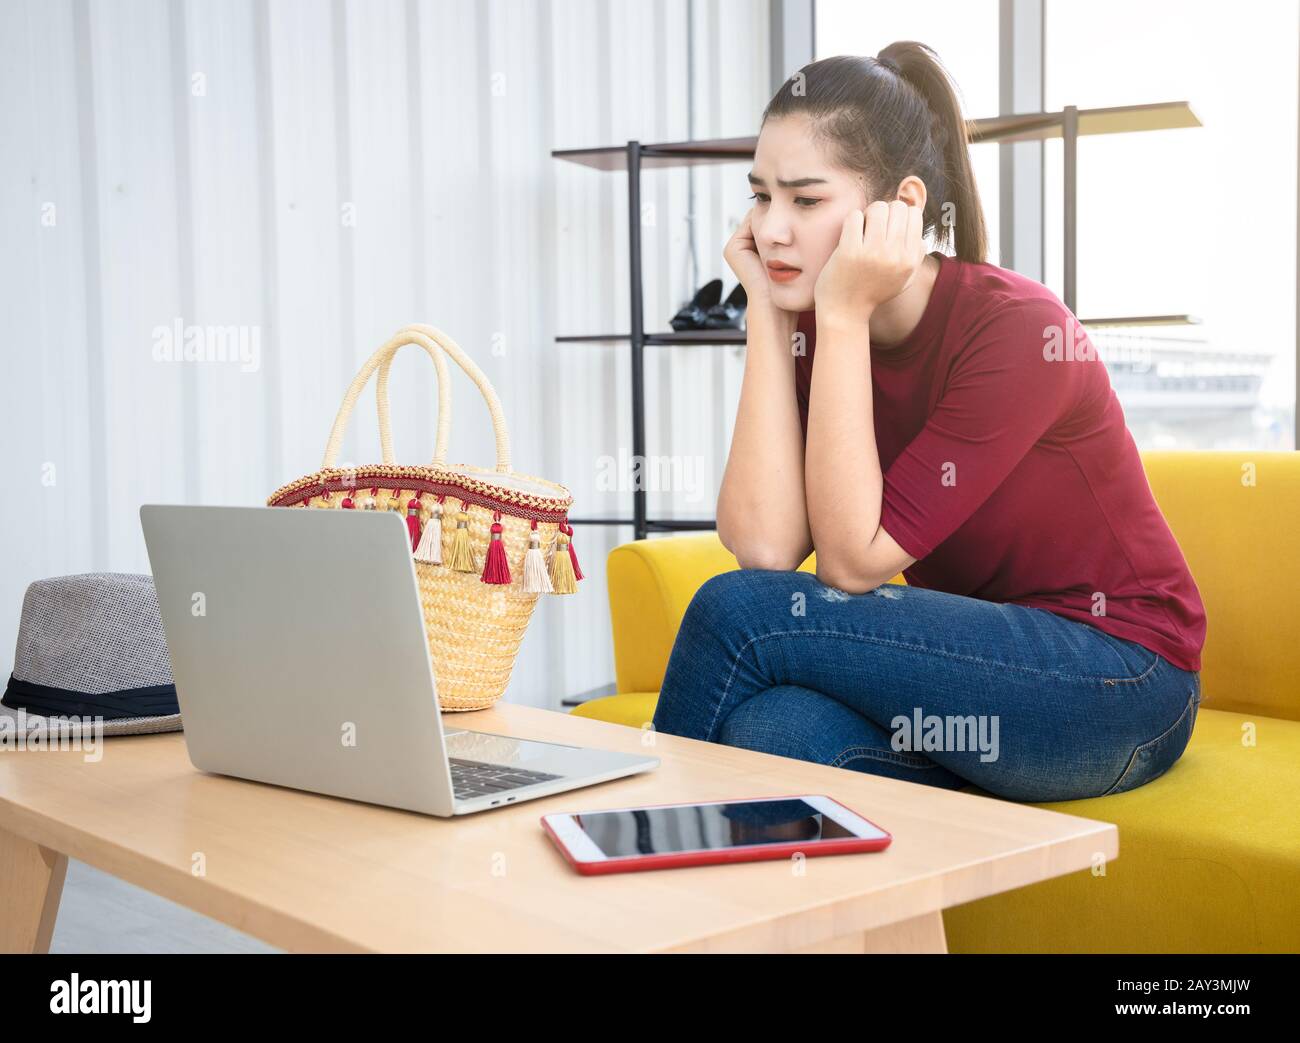 Ängstliche asiatische Frau sitzt auf dem gelben Sofa und schaut auf den Bildschirm ihres Computerlaptors. Internet-Einflussnehmer sorgen sich um ihr Problem mit den sozialen Medien. Stockfoto